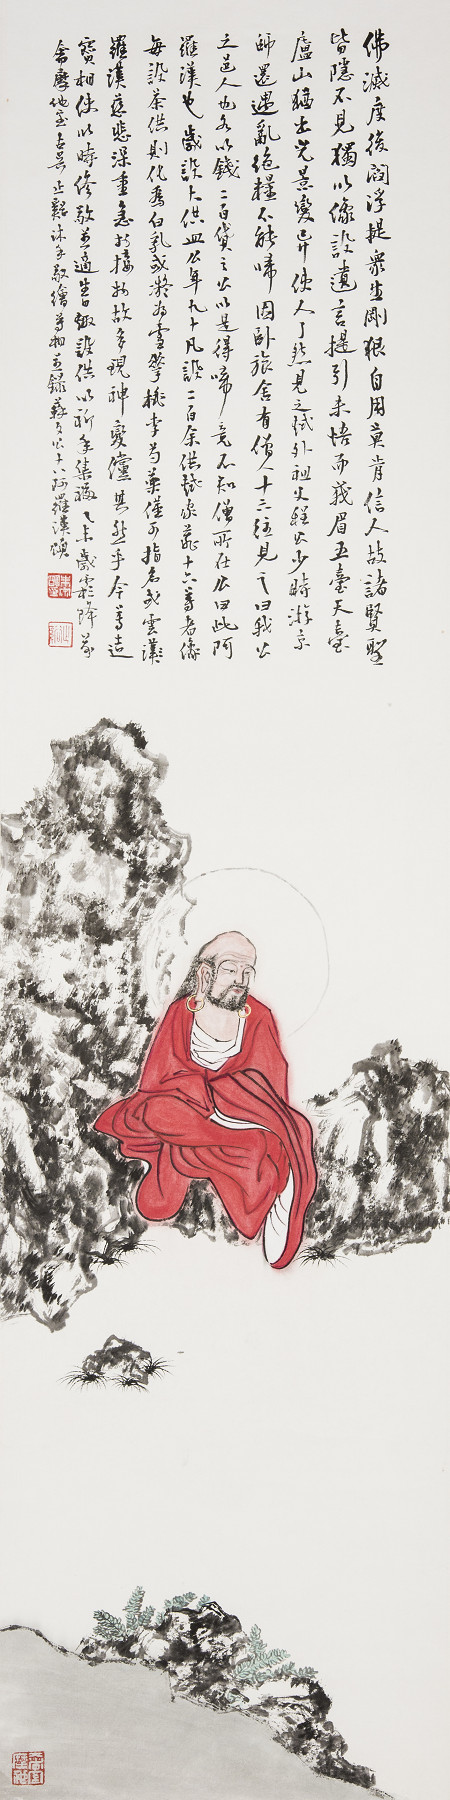 朱宗明書畫作品《東坡十八羅漢頌》136×34cm (4.1平尺)